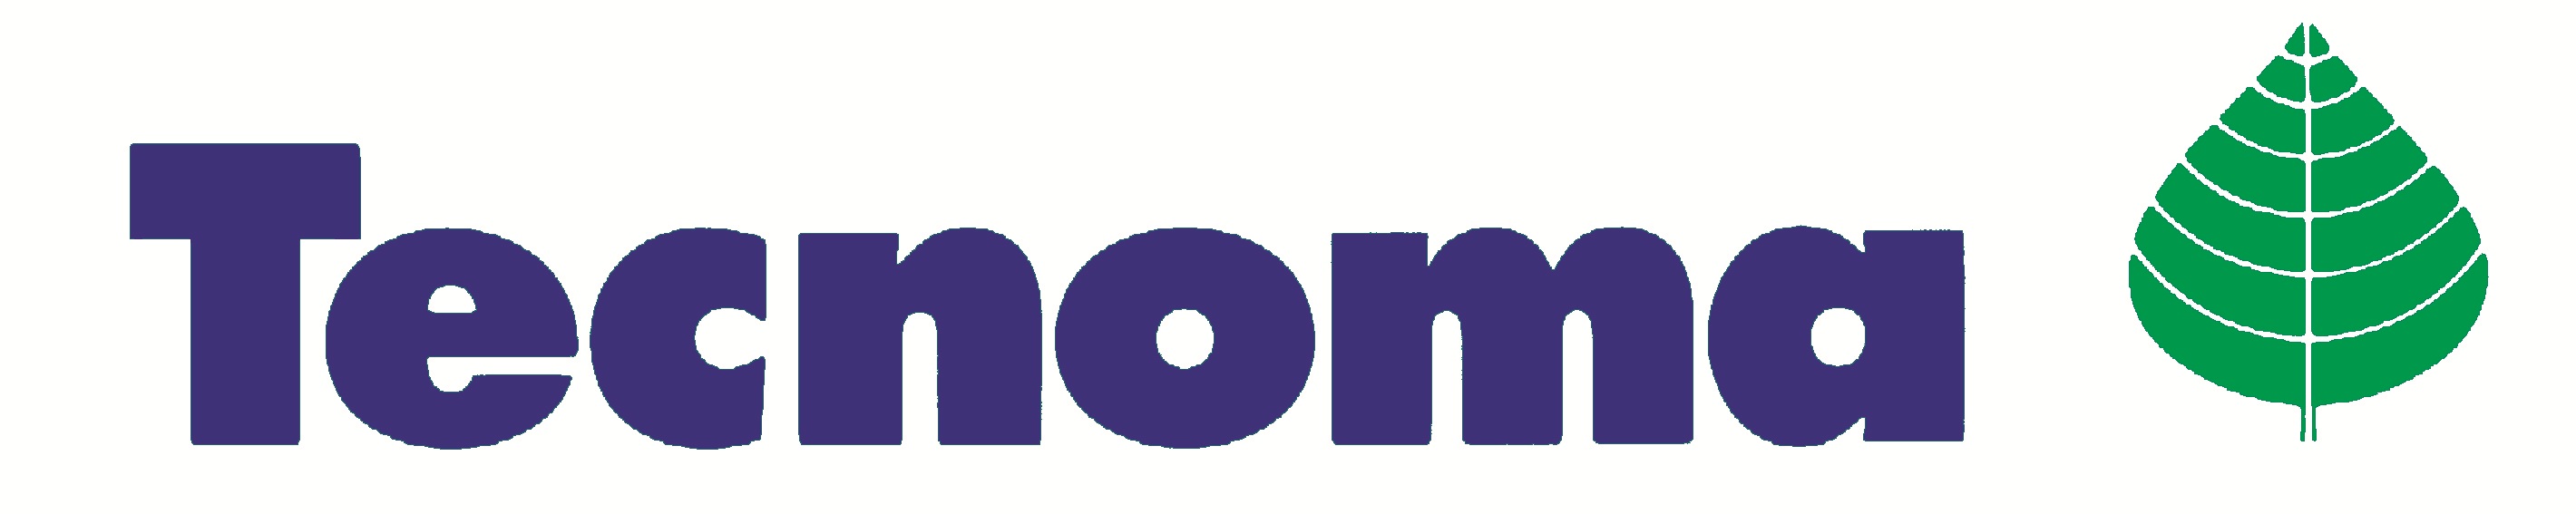 Tecnoma Agriculture Logo photo - 1